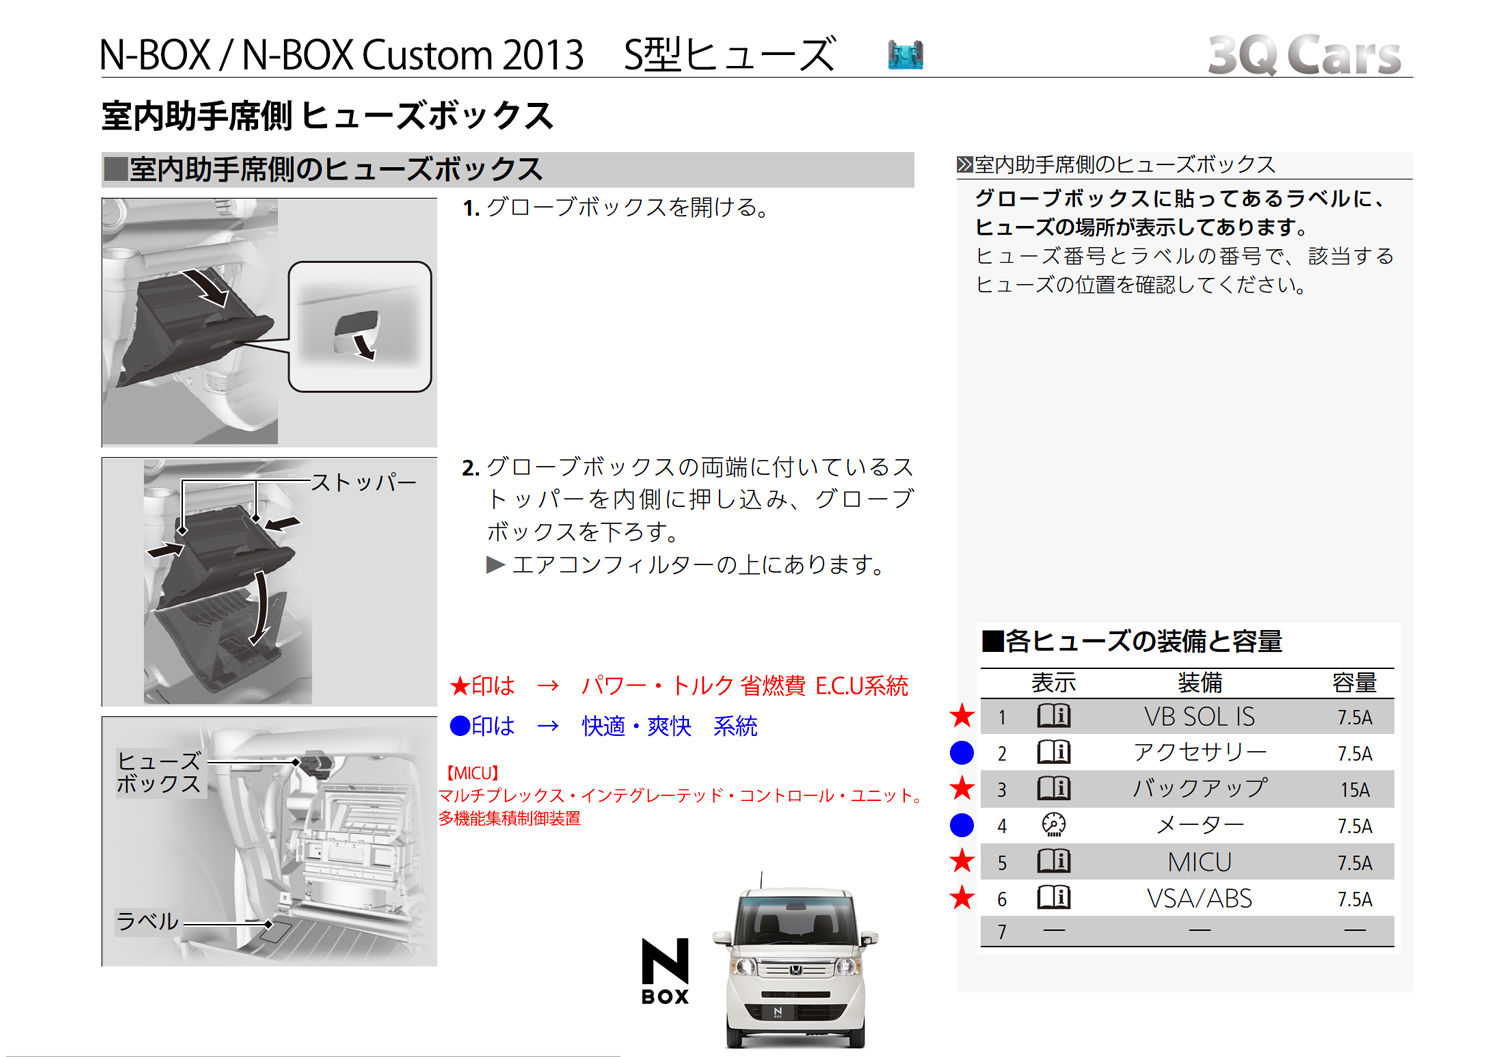 Honda N Box Jf1 N Box Jf2 ｶｽﾀﾑ サンキューカーズ 3q自動車 の 公式ホムペ